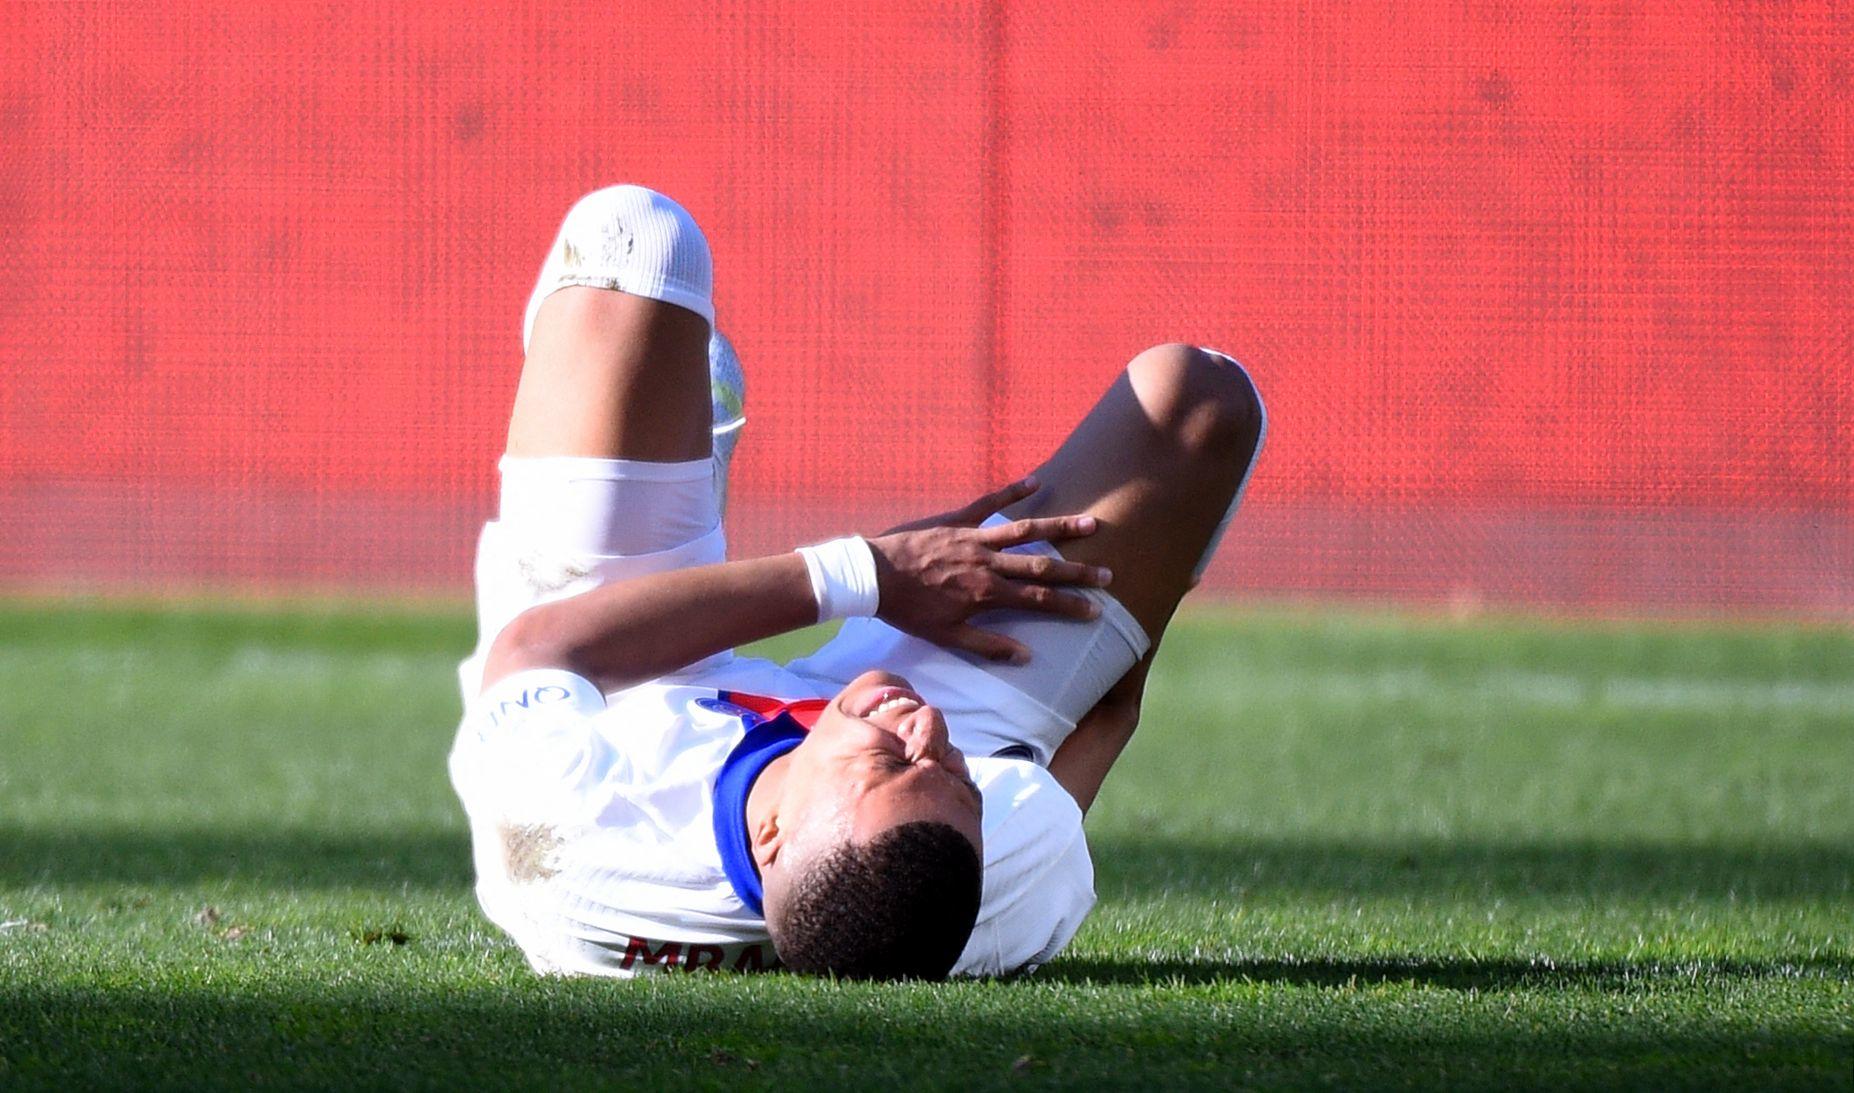 Kylian Mbappé est resté au sol après un choc genou contre genou.